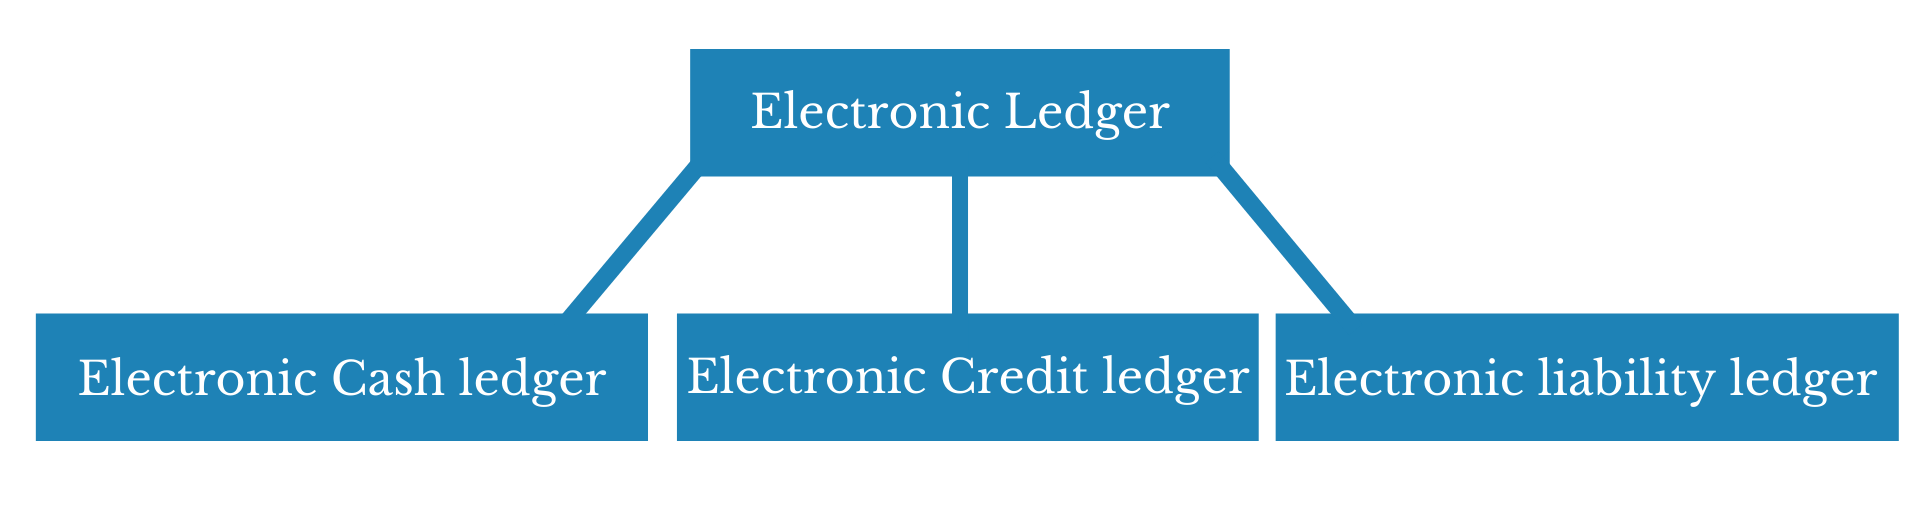 Credit ledger vs Cash ledger